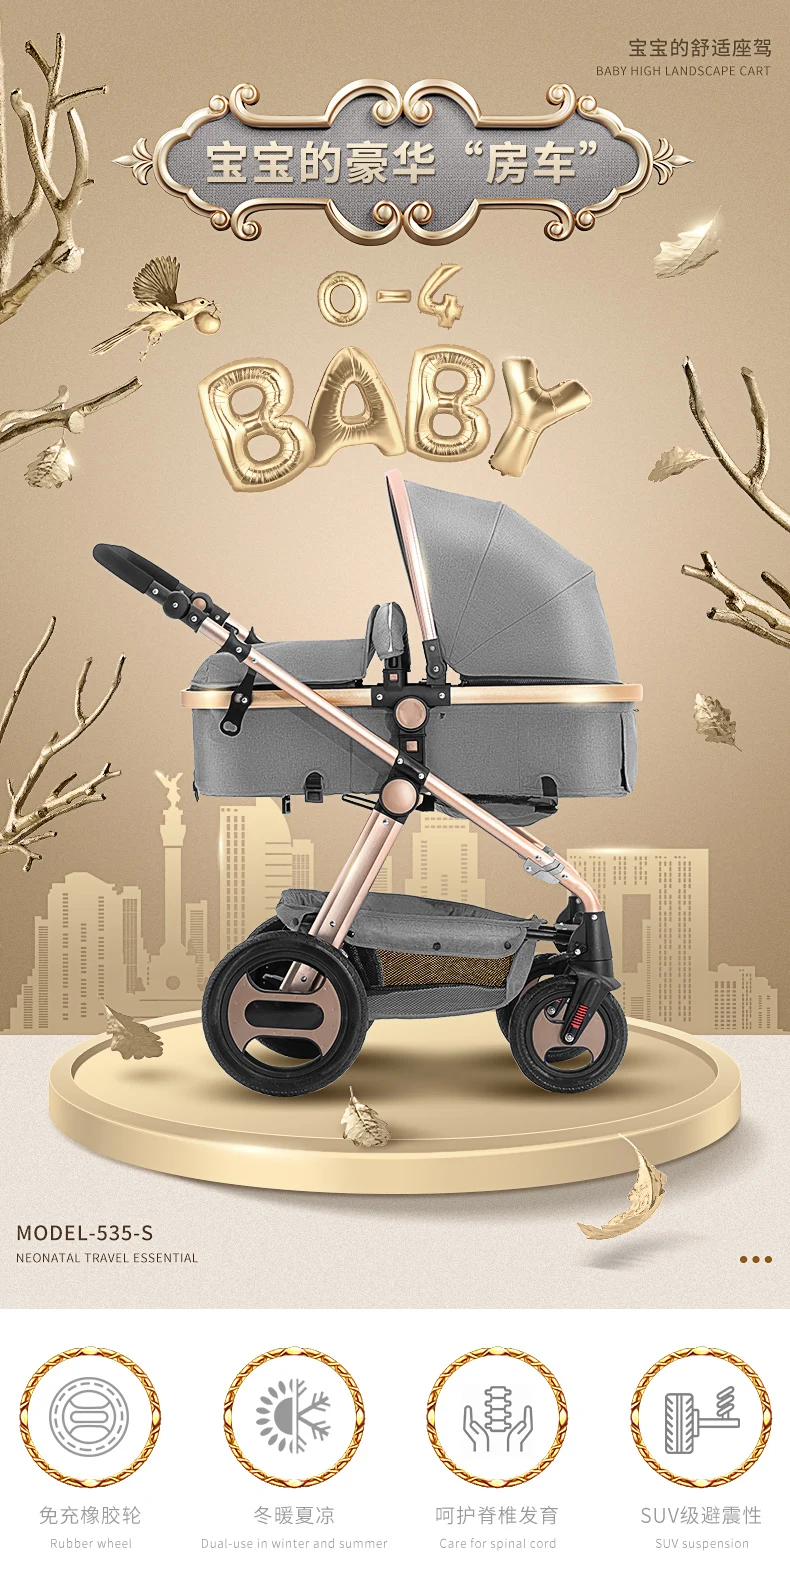 Babyfond обновленная версия высокой ландшафтной коляски может сидеть плоский и легкий складной амортизатор детская коляска